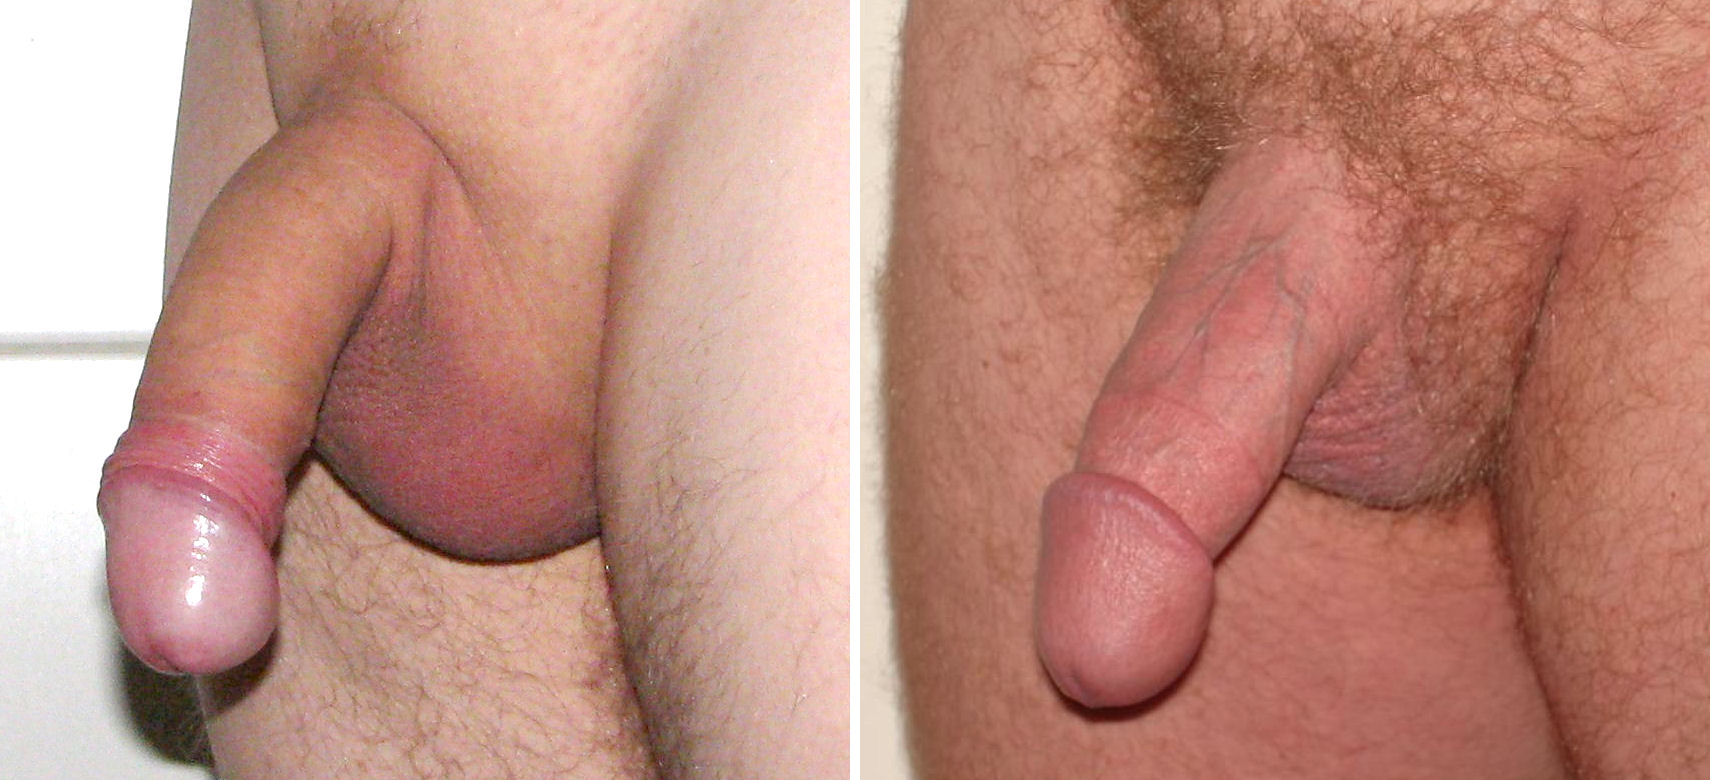 Uncircumcised cumshot